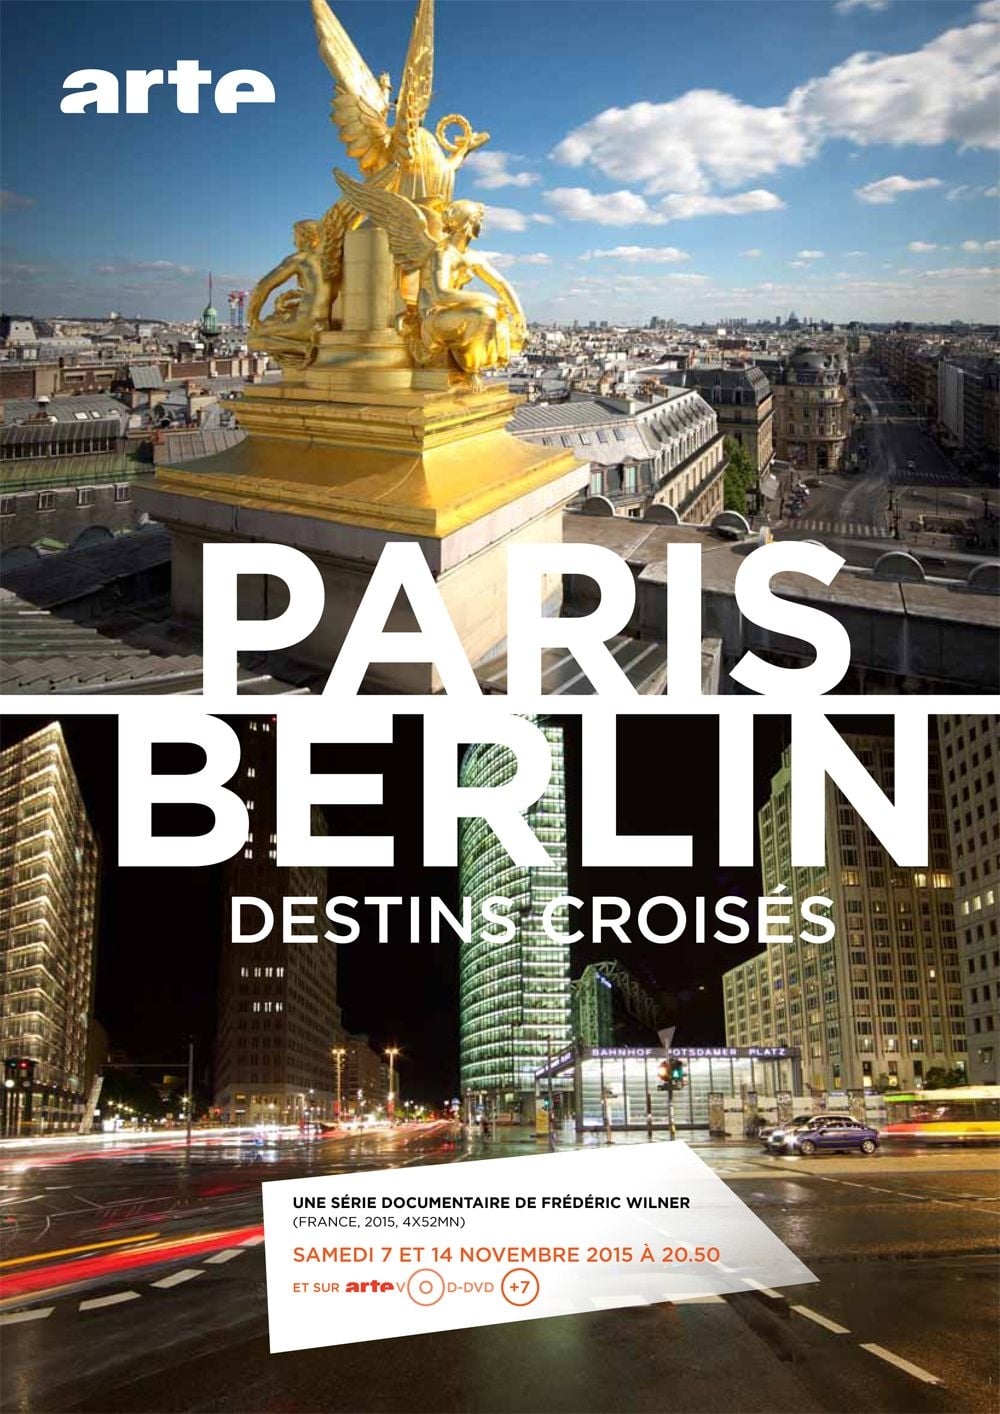 Paris-Berlin: Destinos cruzados